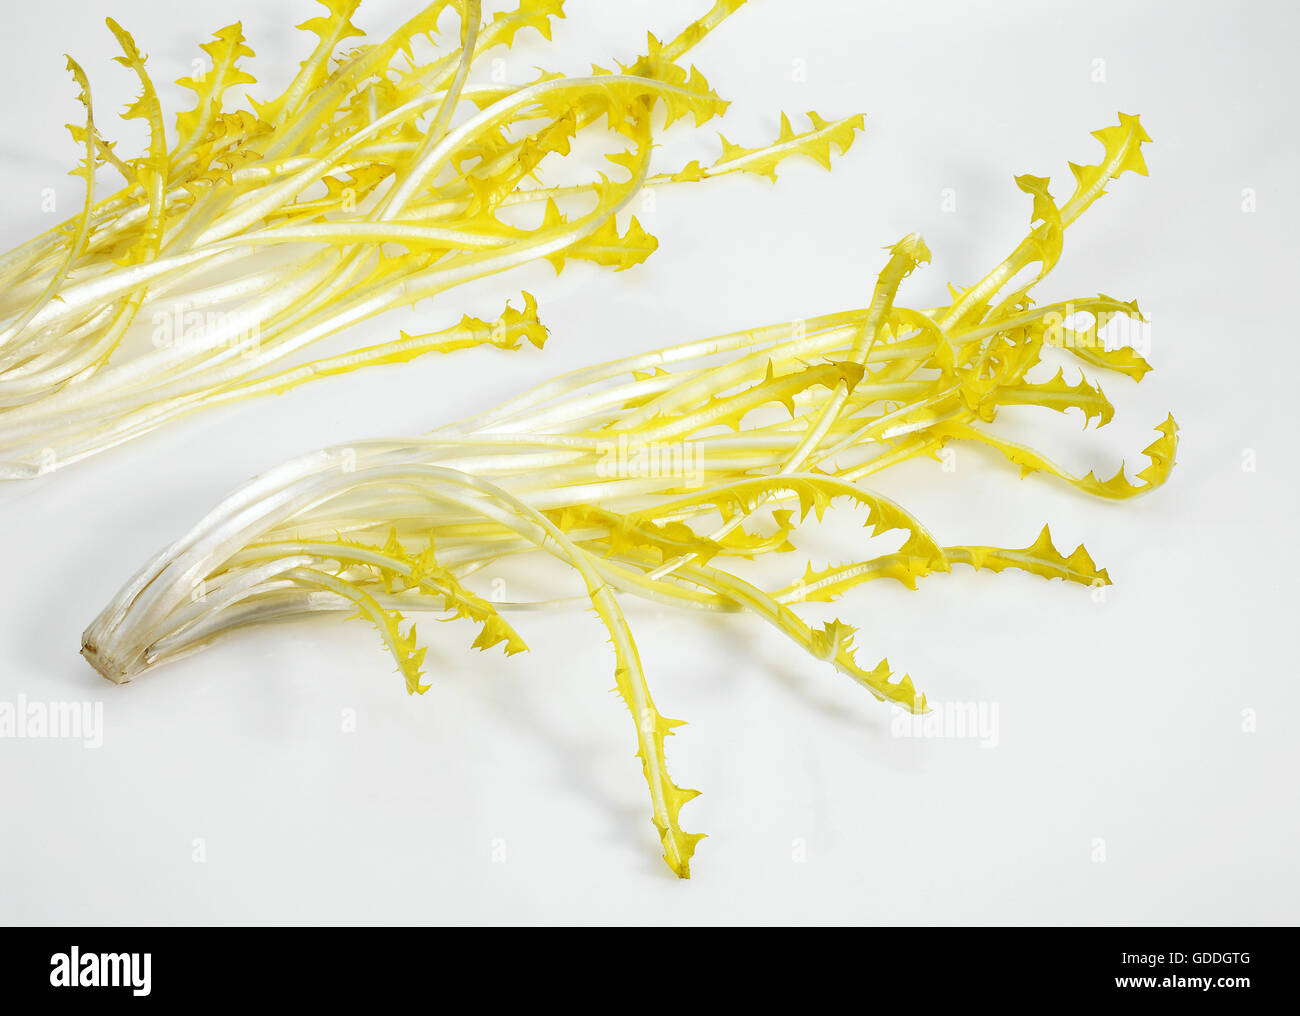 Salade française appelée Barbe de capucin, Cichorium intybus, feuilles contre fond blanc Banque D'Images